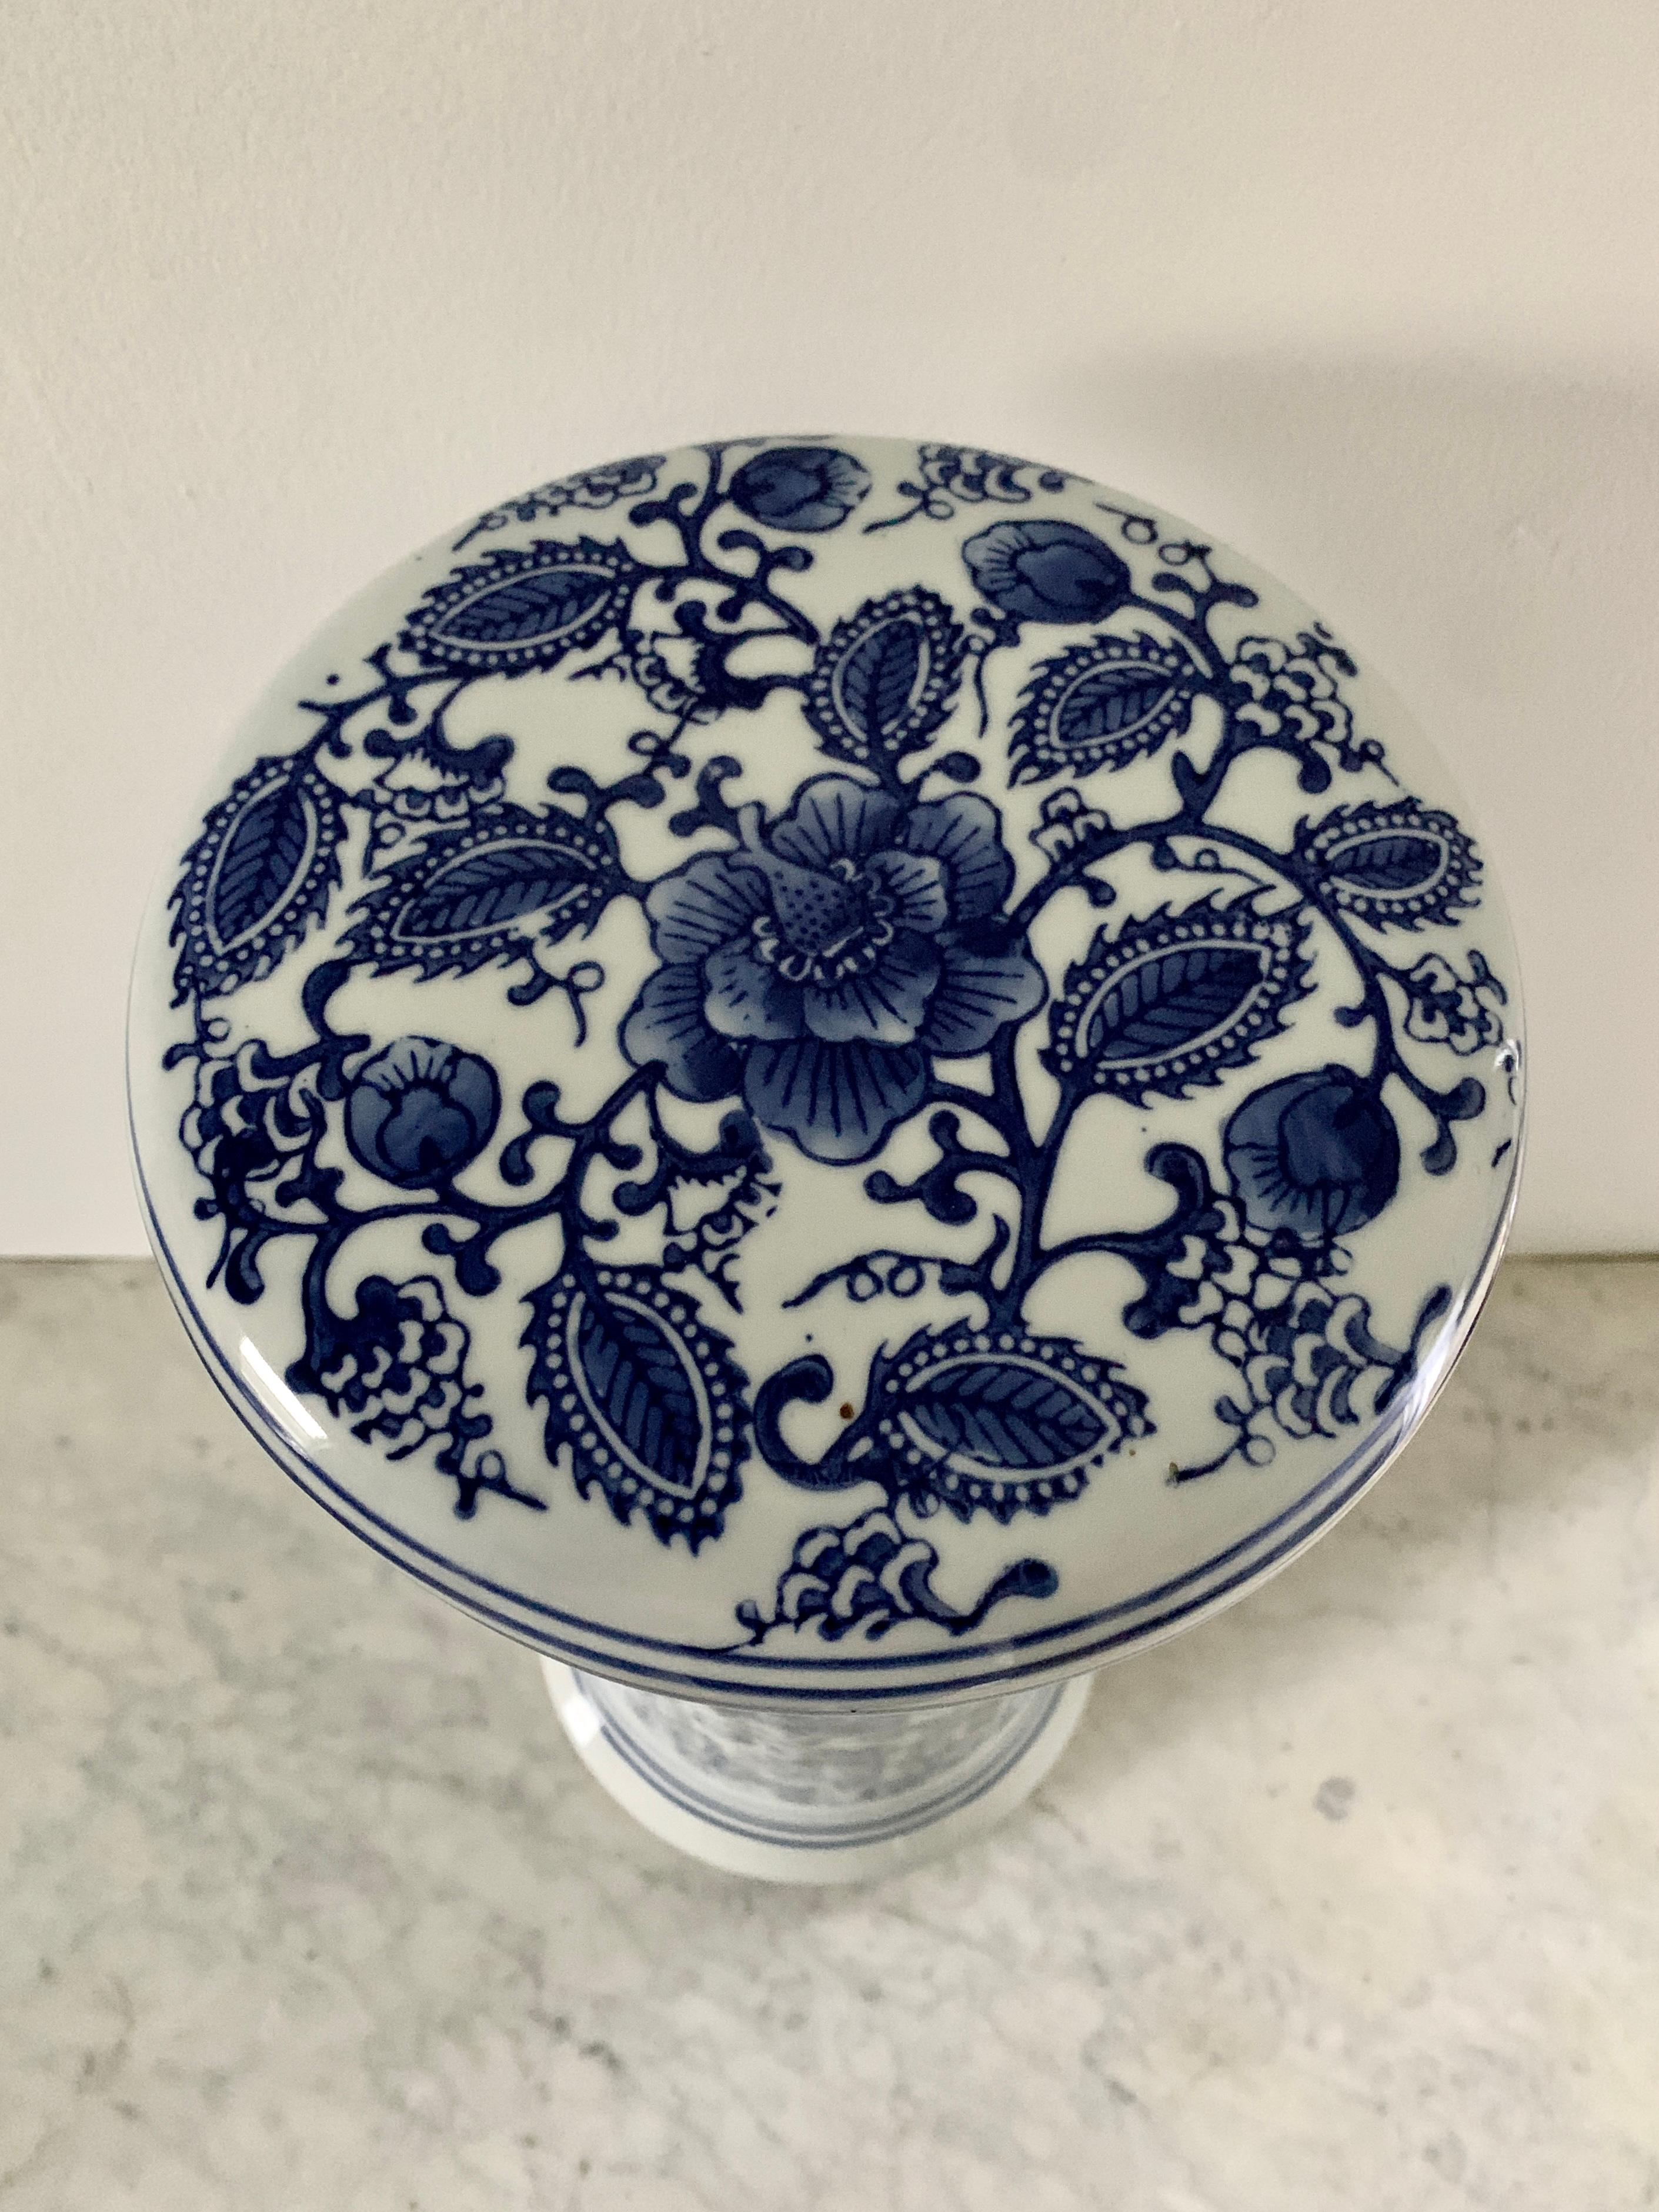 Ein wunderschöner blau-weißer Porzellan-Gartenhocker im Chinoiserie-Stil, Pflanzenständer oder kleiner Beistelltisch

Ende des 20. Jahrhunderts

Maße: 8,25 